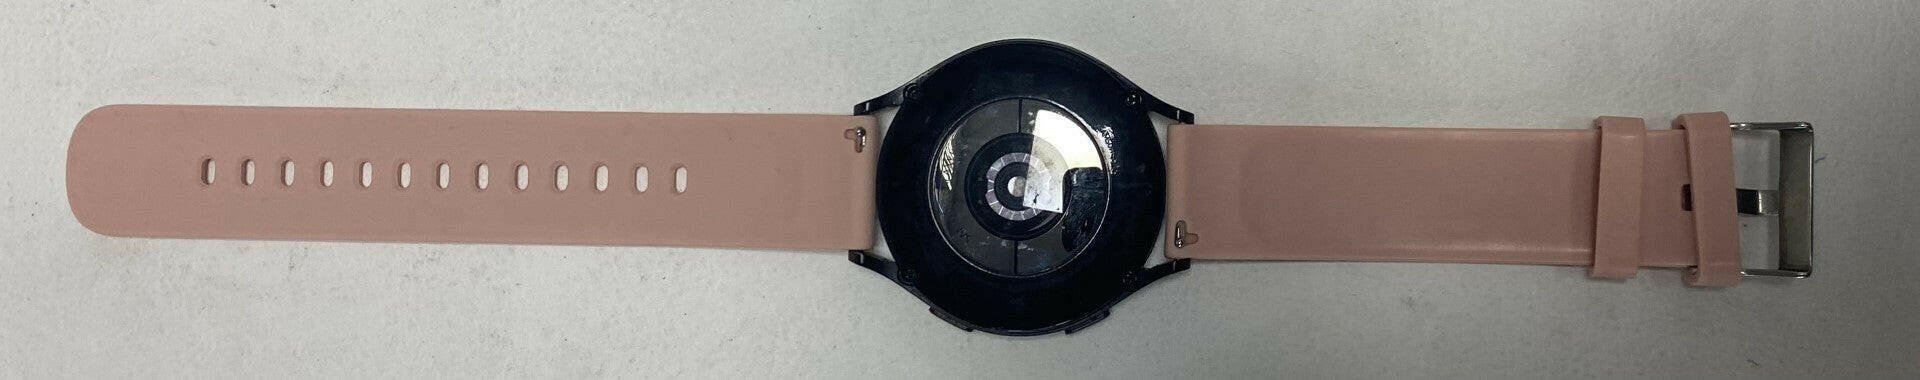 Samsung Galaxy Watch 4 LTE Black w/Pink Strap - 40mm